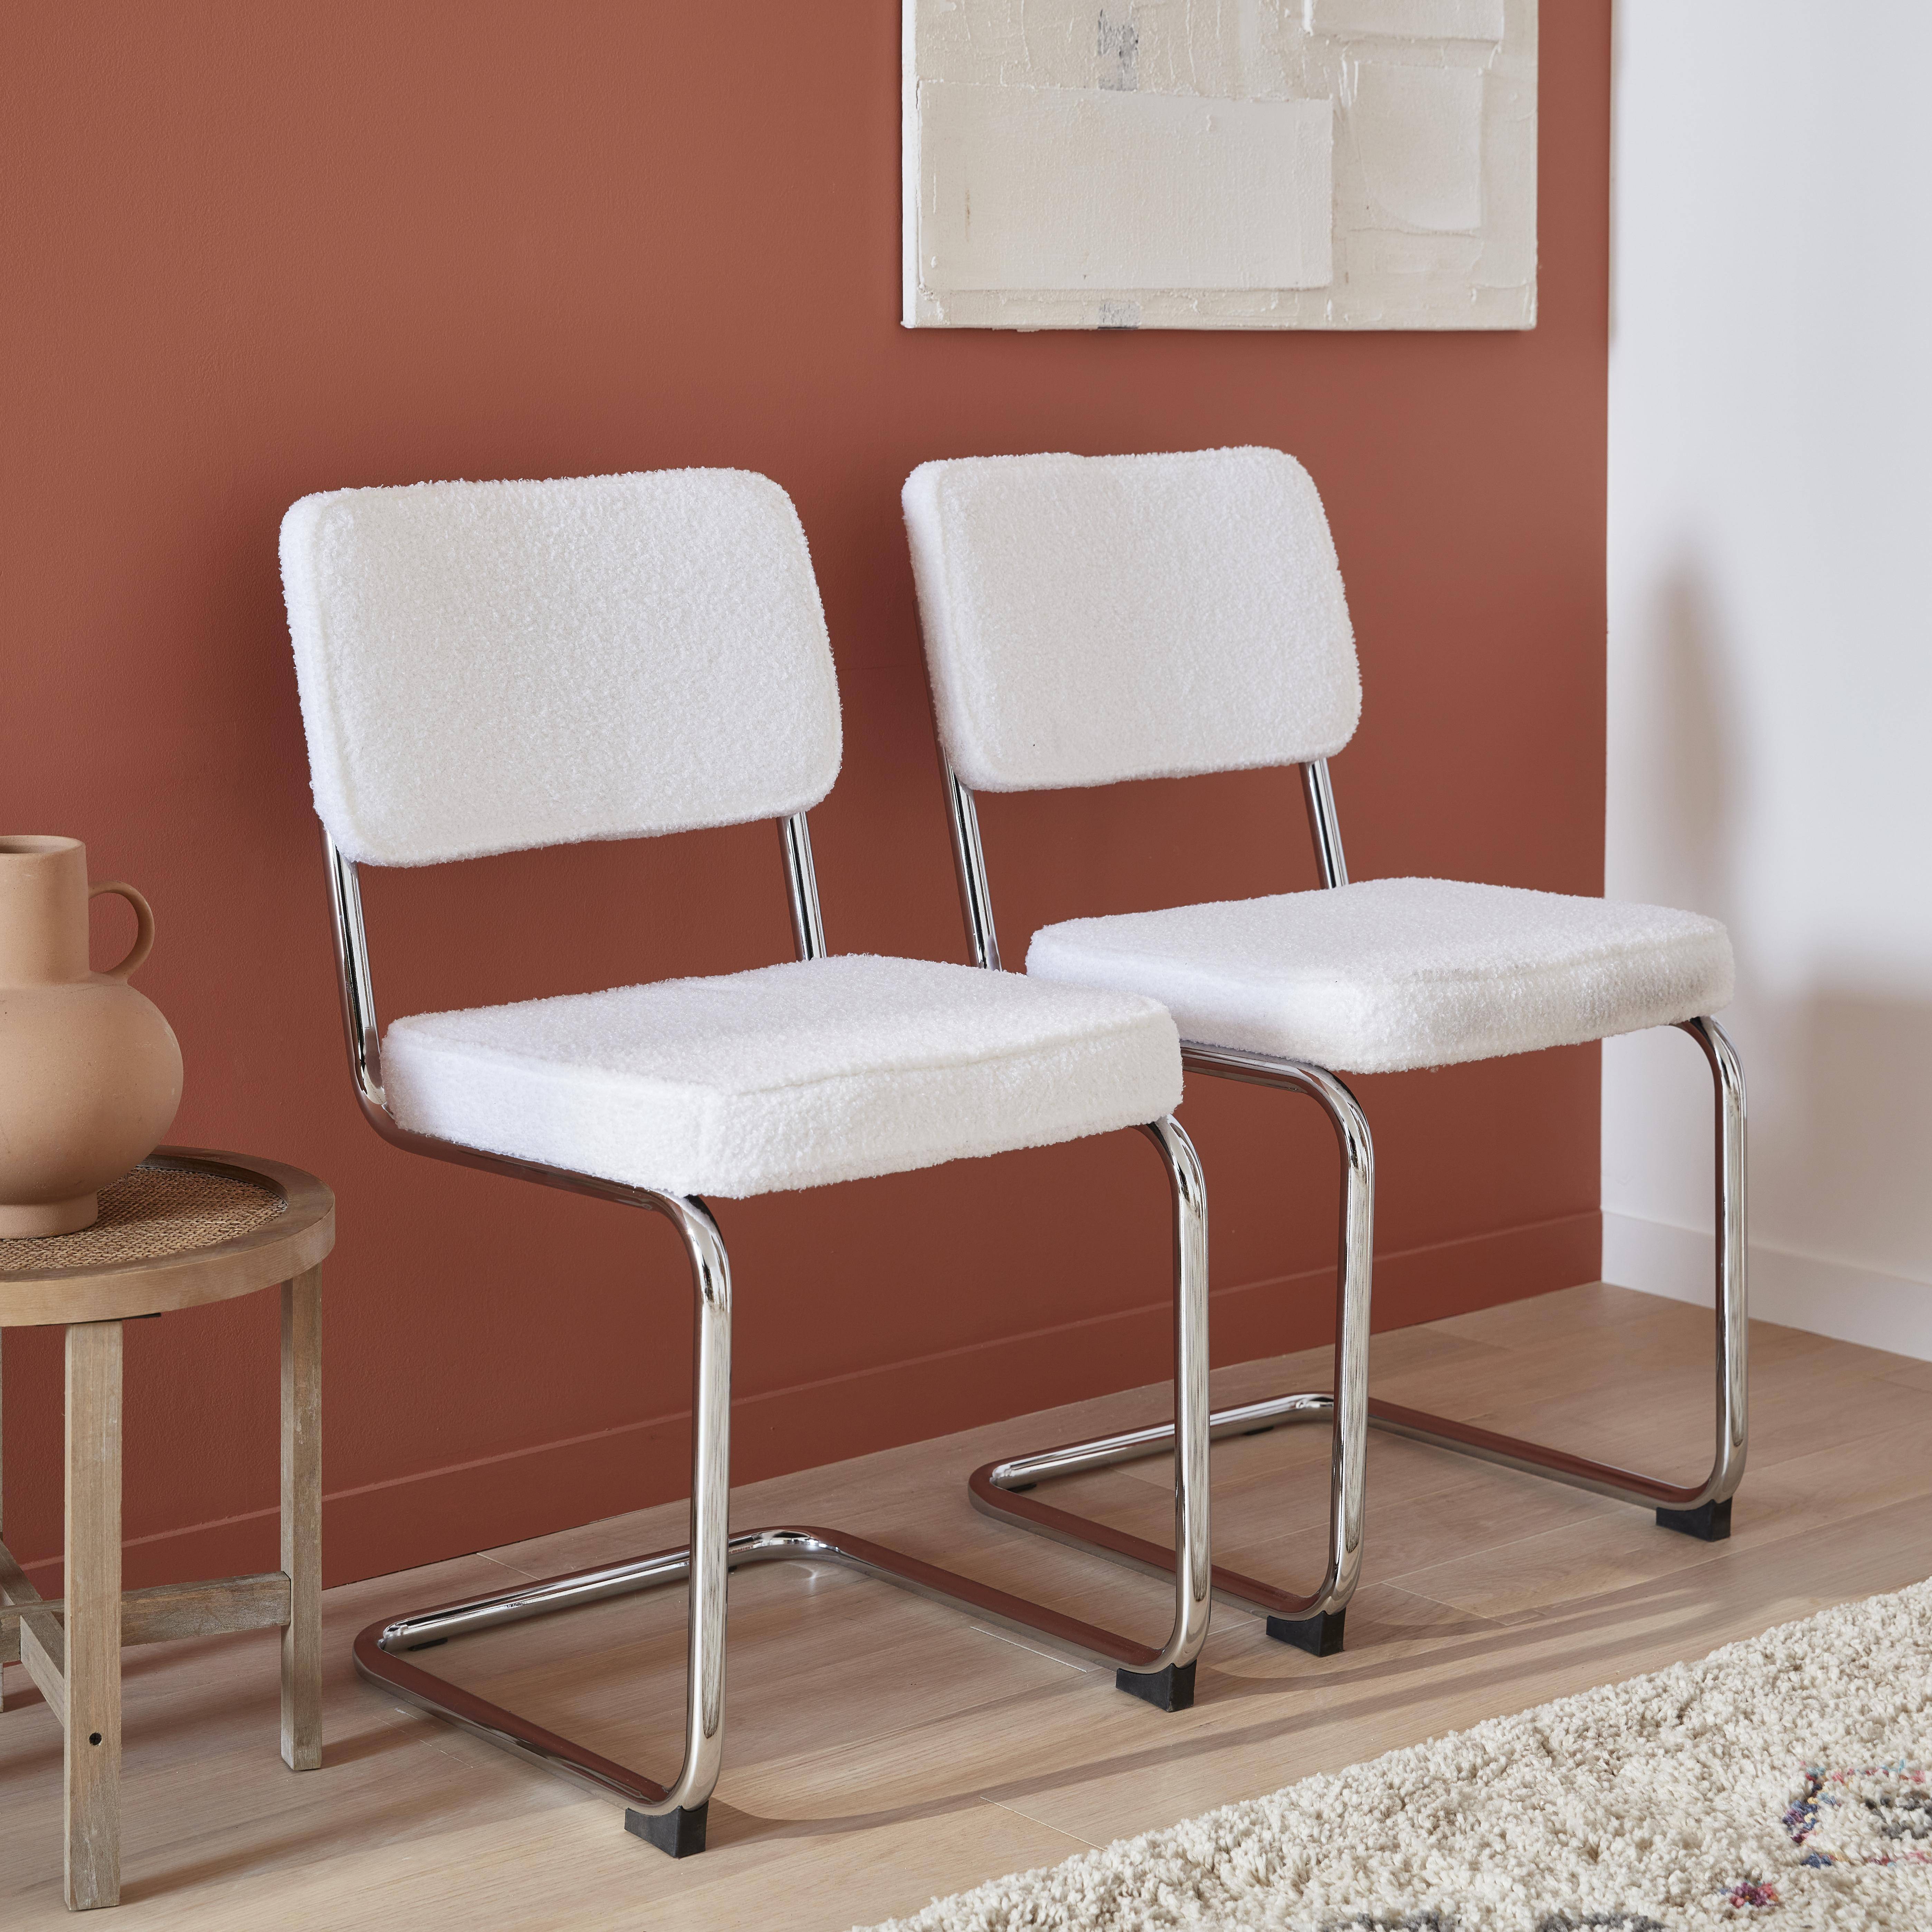 2 cadeiras cantilever - Maja - com caracóis brancos, 46 x 54,5 x 84,5cm Photo1